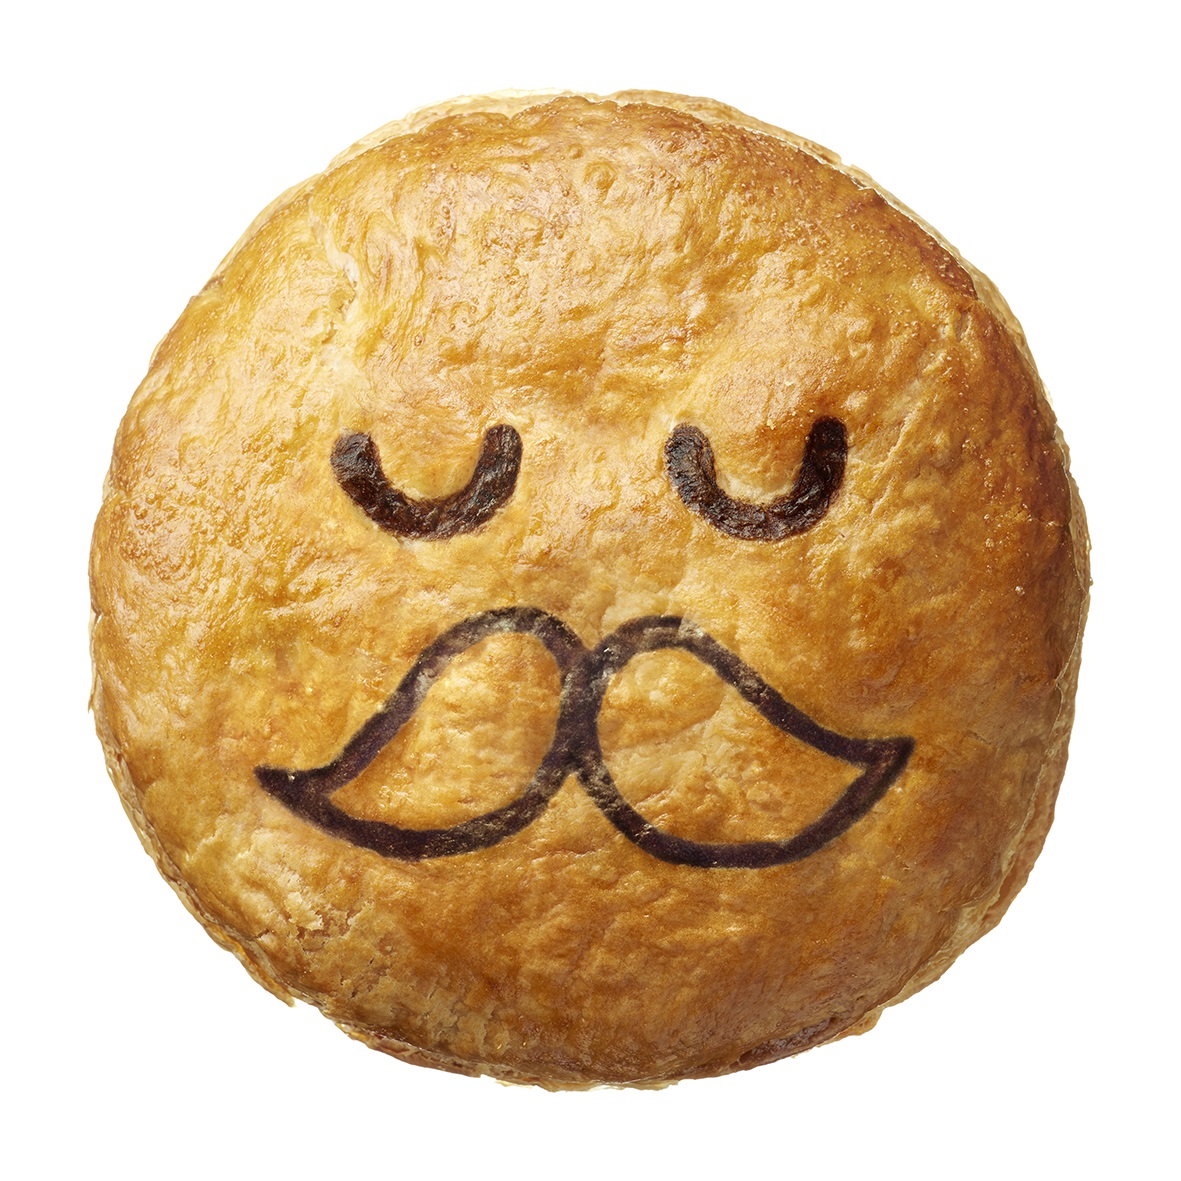 オーストラリア発祥のパイ専門店が「Happy Christmas Pie face」をテーマに新商品を発売